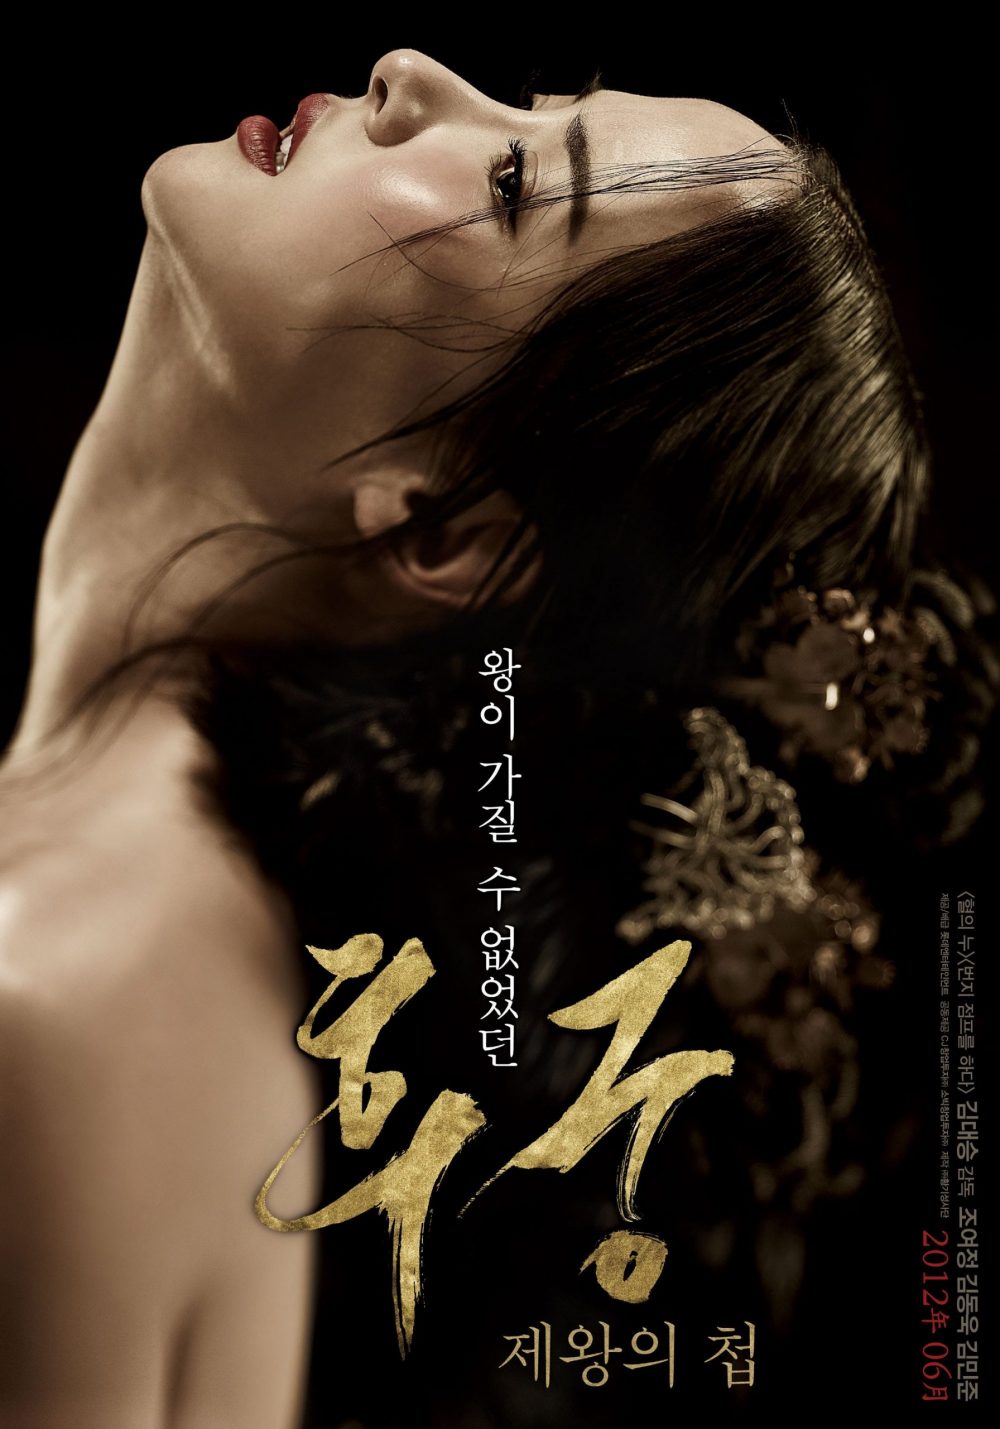 Phim Cho Yeo Jeong đóng: Hậu cung - The Concubine (2012)